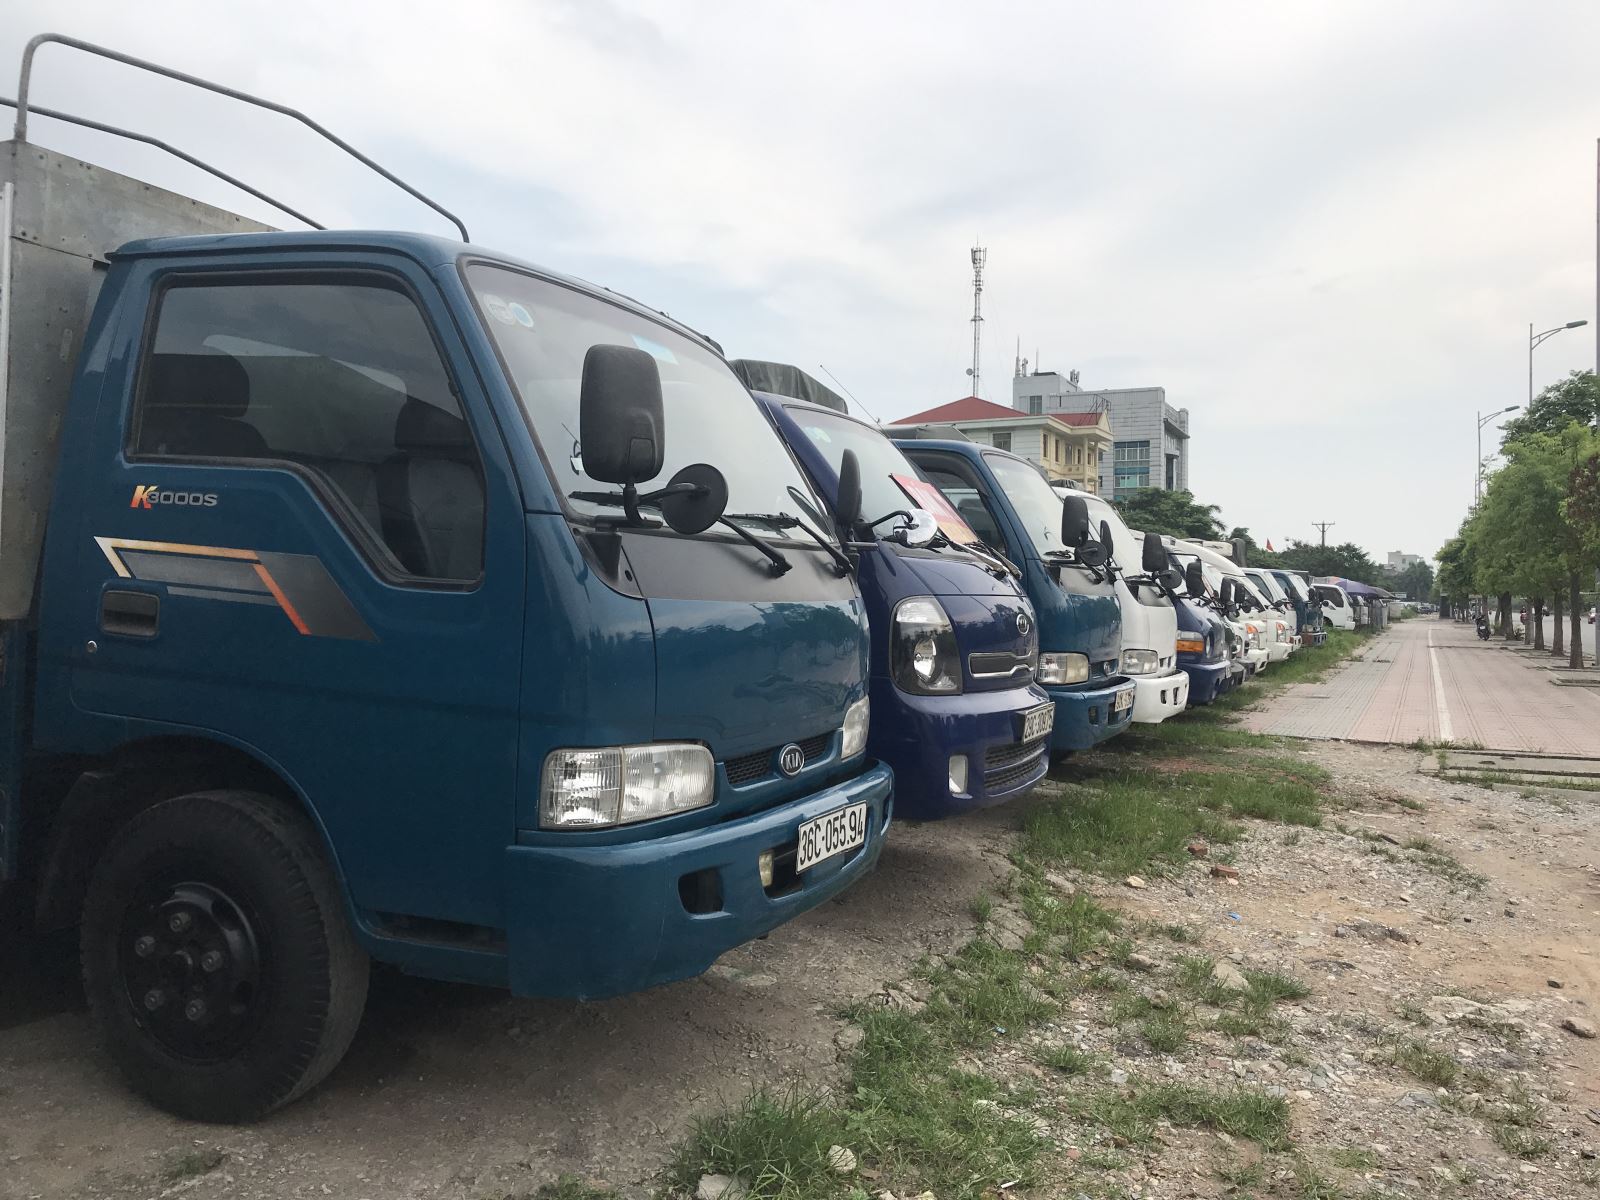 Mua bán xe tải cũ ở Quảng Ninh